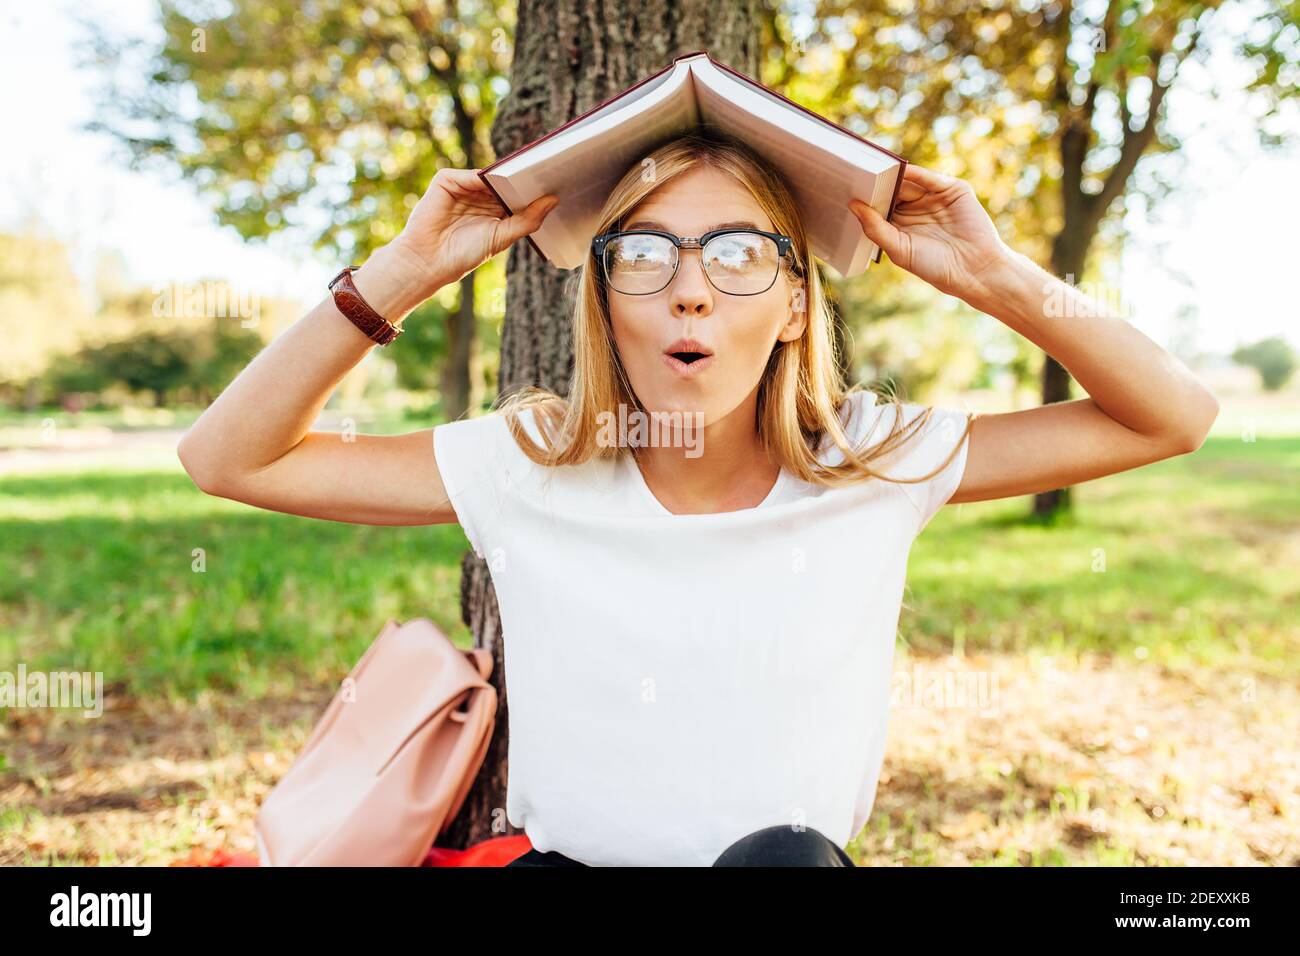 Jeune élève positif avec des lunettes, drôle posant avec un livre sur sa tête, dans le Parc assis sur une couverture rouge Banque D'Images